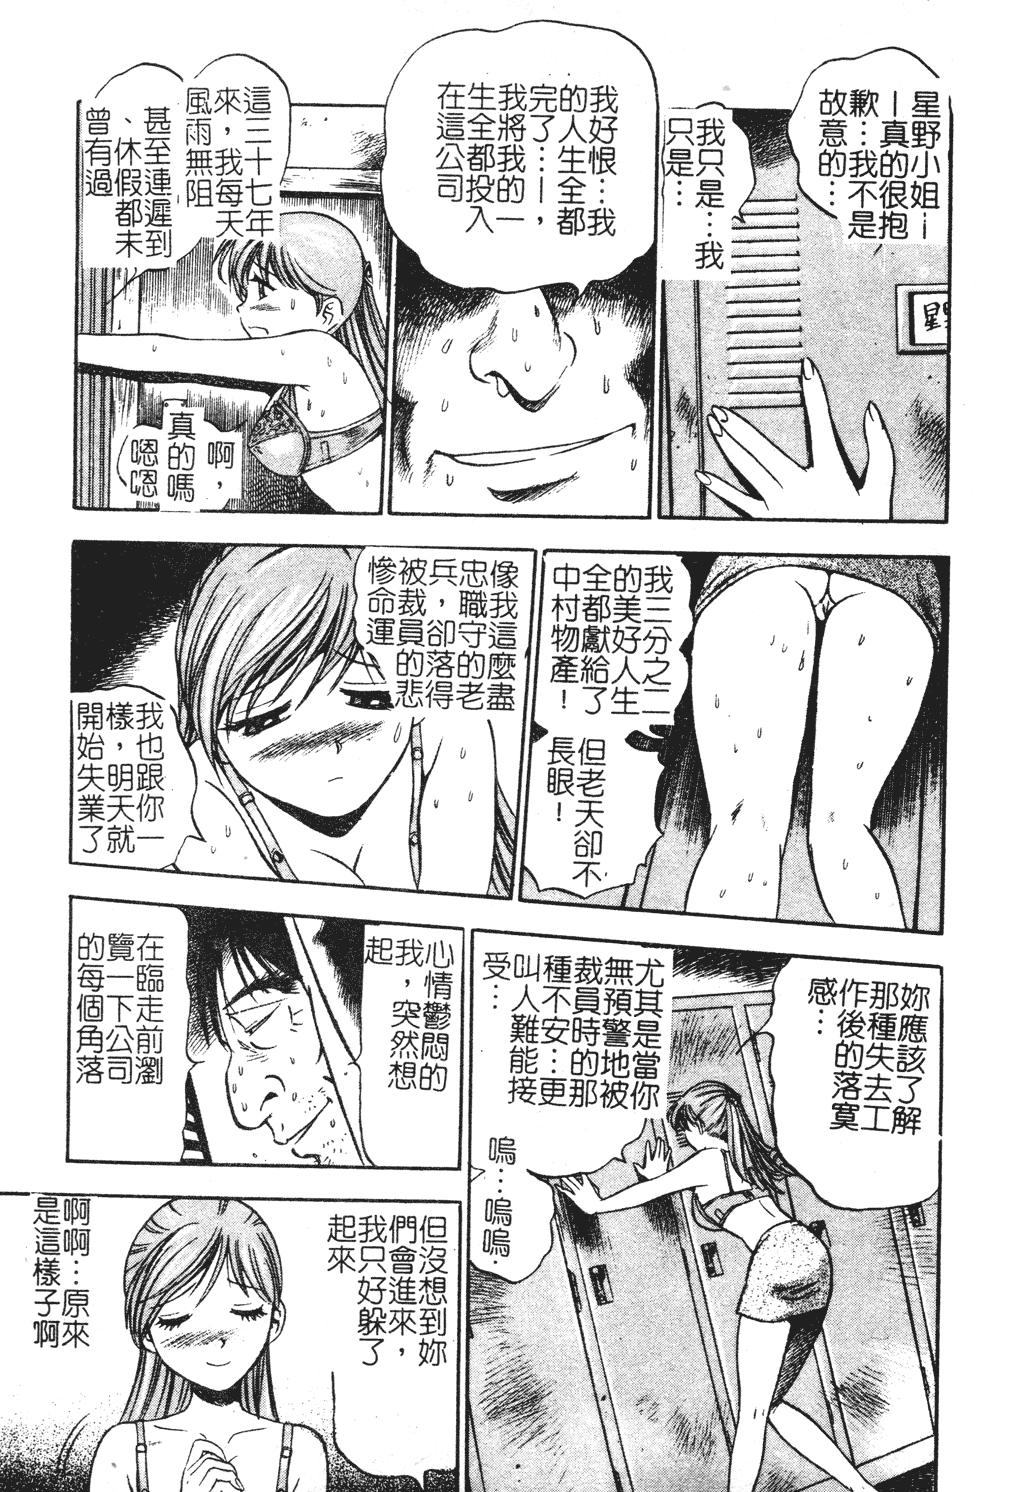 Hidden Camera Muga Anthology 1 - Seifuku Kouishitsu Stepsiblings - Page 8